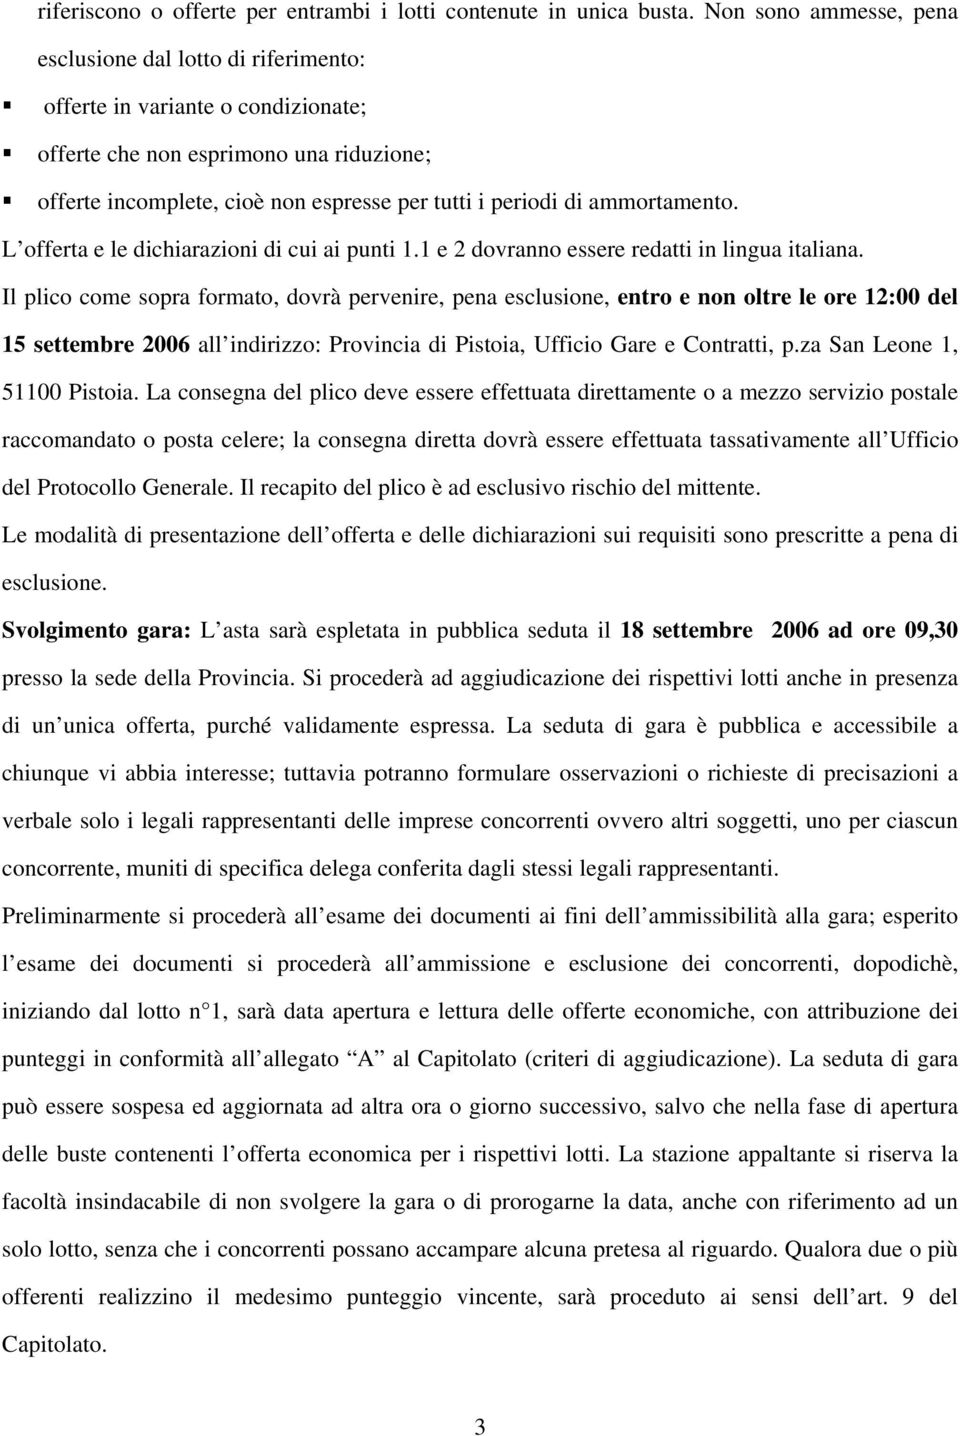 ammortamento. L offerta e le dichiarazioni di cui ai punti 1.1 e 2 dovranno essere redatti in lingua italiana.